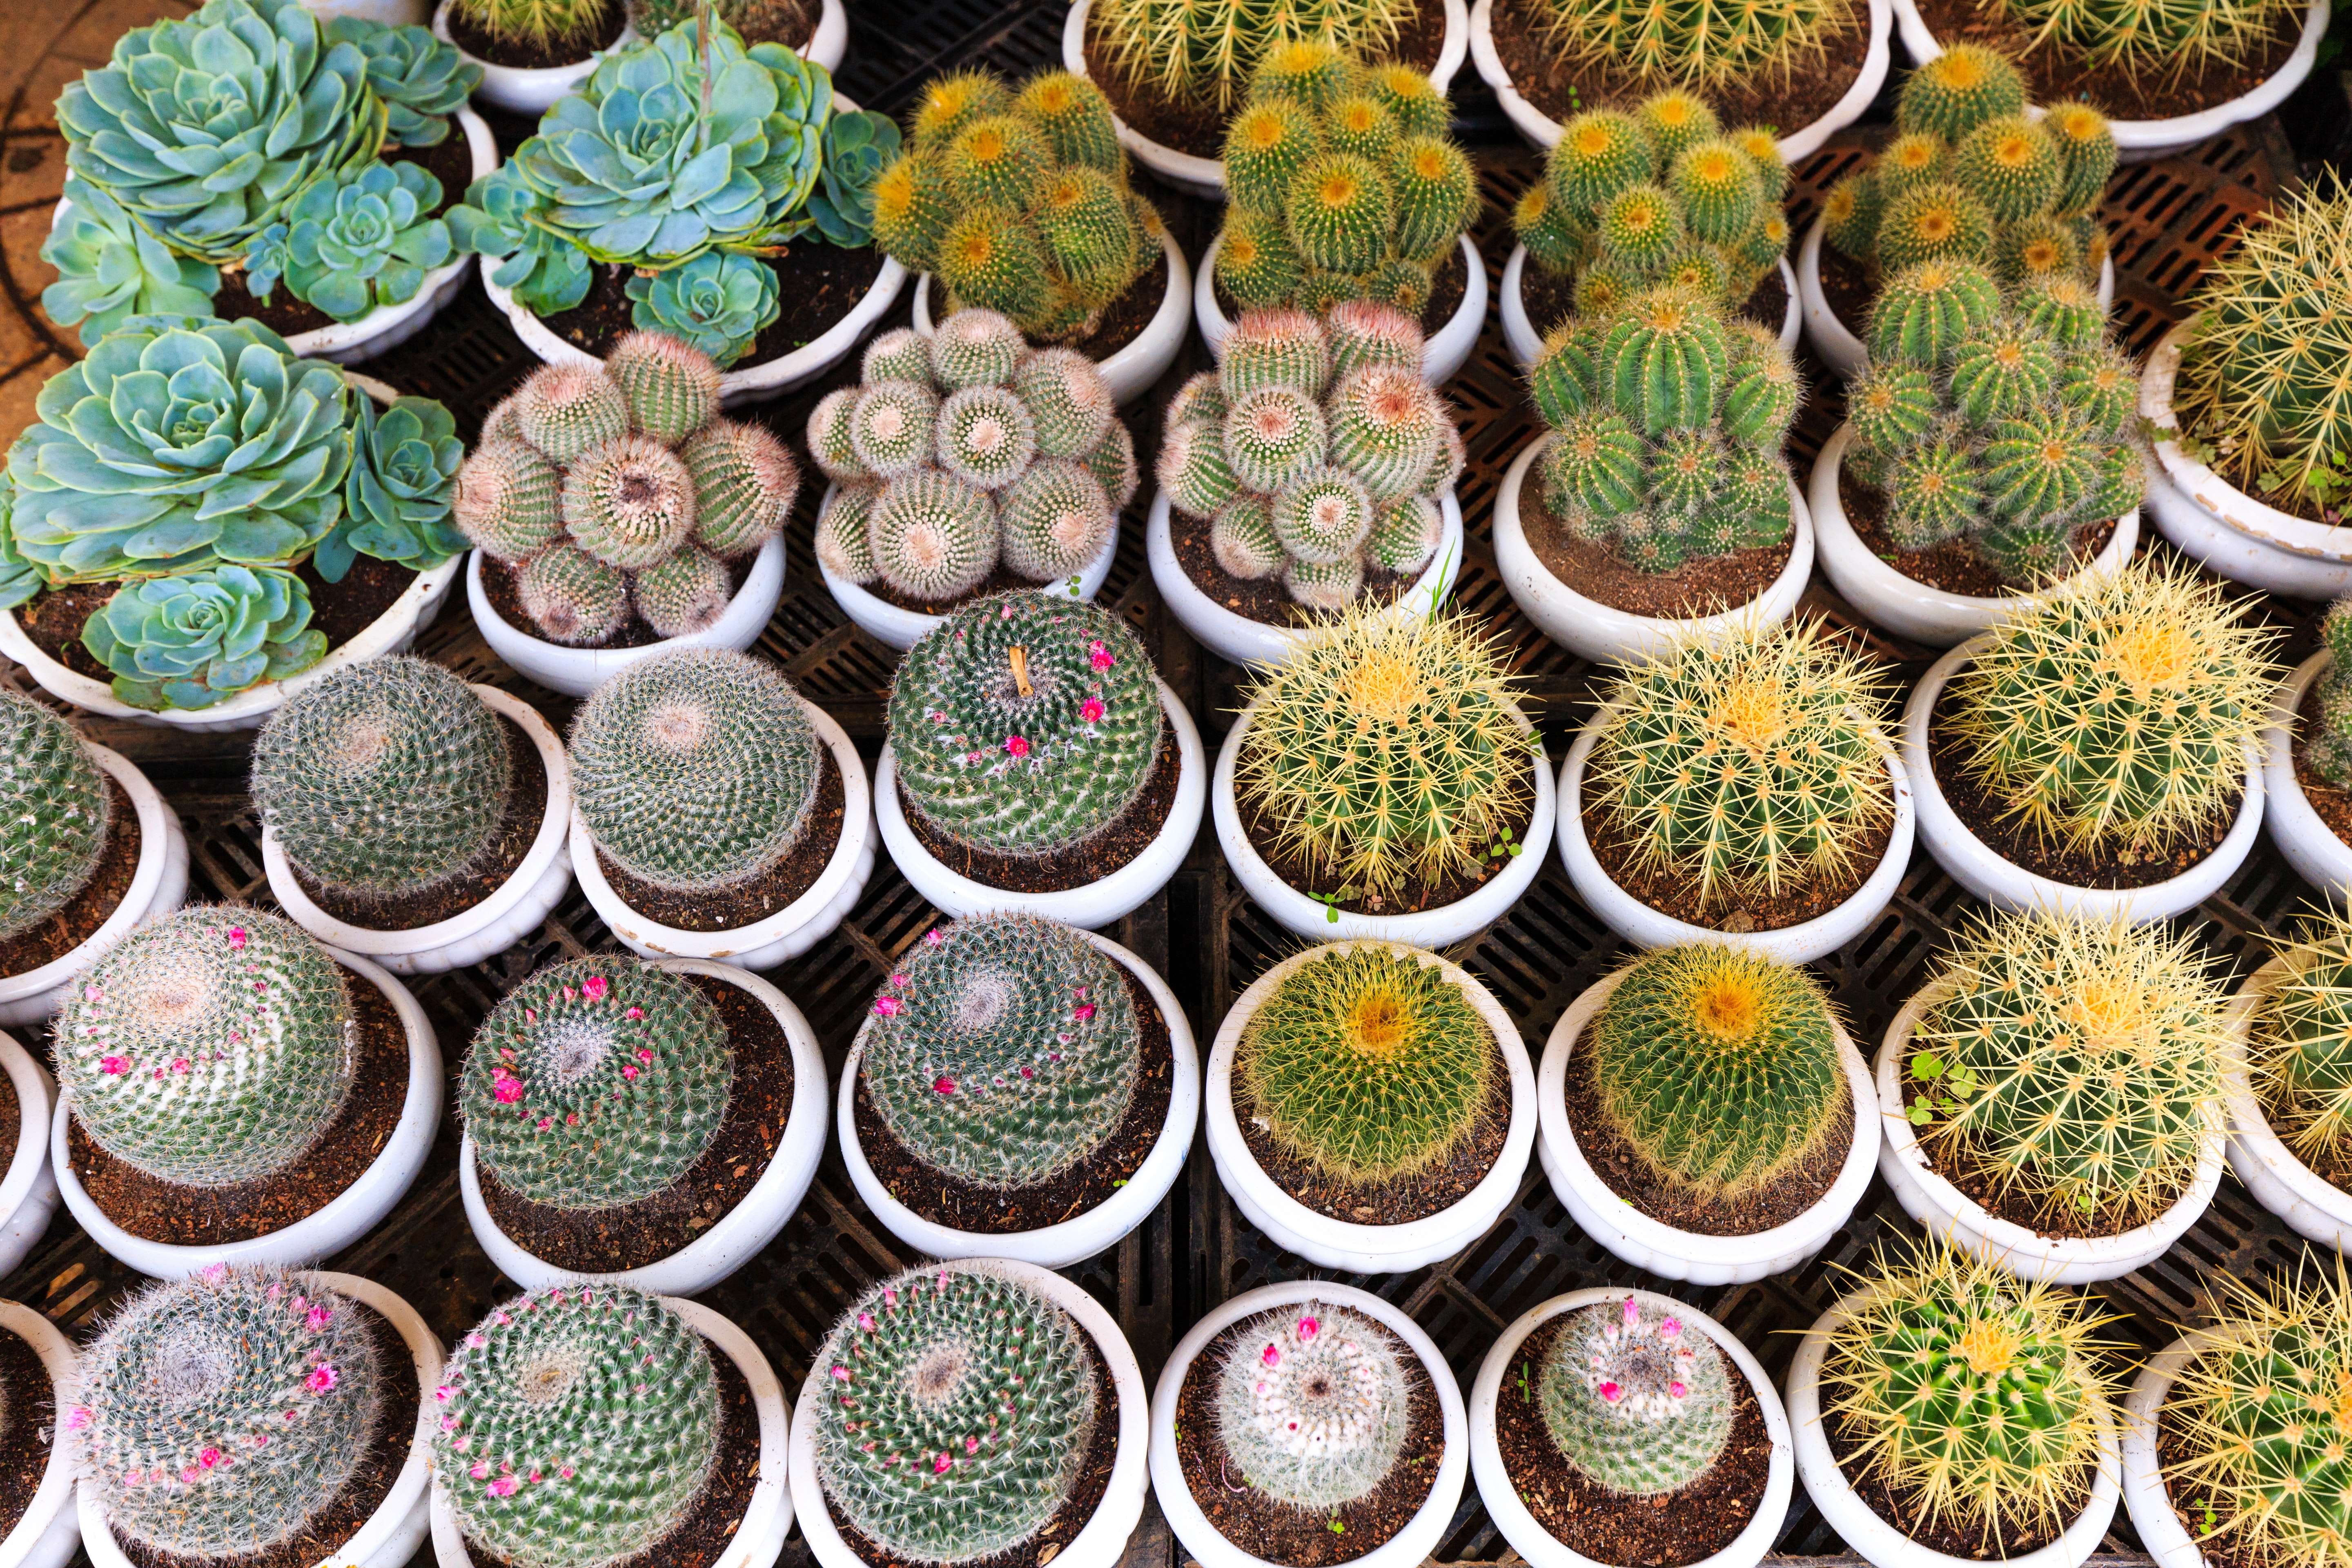 Photo by Quang Nguyen Vinh via Pexels cactus-flora-potted-plants-2138073.jpg